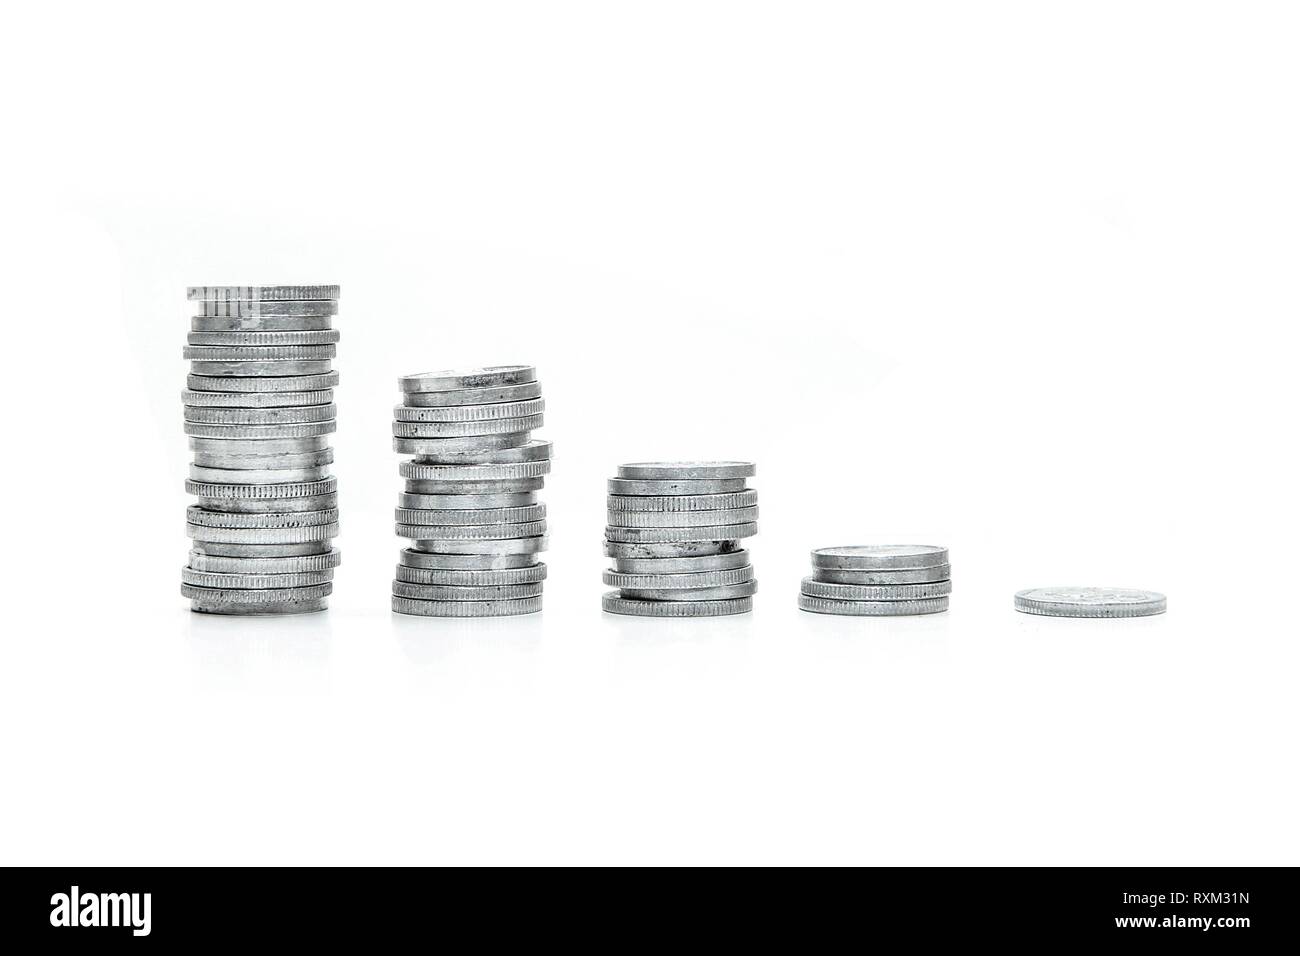 Eine Spalte mit kleinen Münzen von der höchsten zur niedrigsten sortiert. Symbolisiert den Rückgang der Preise. Auf weissem Hintergrund. Stockfoto